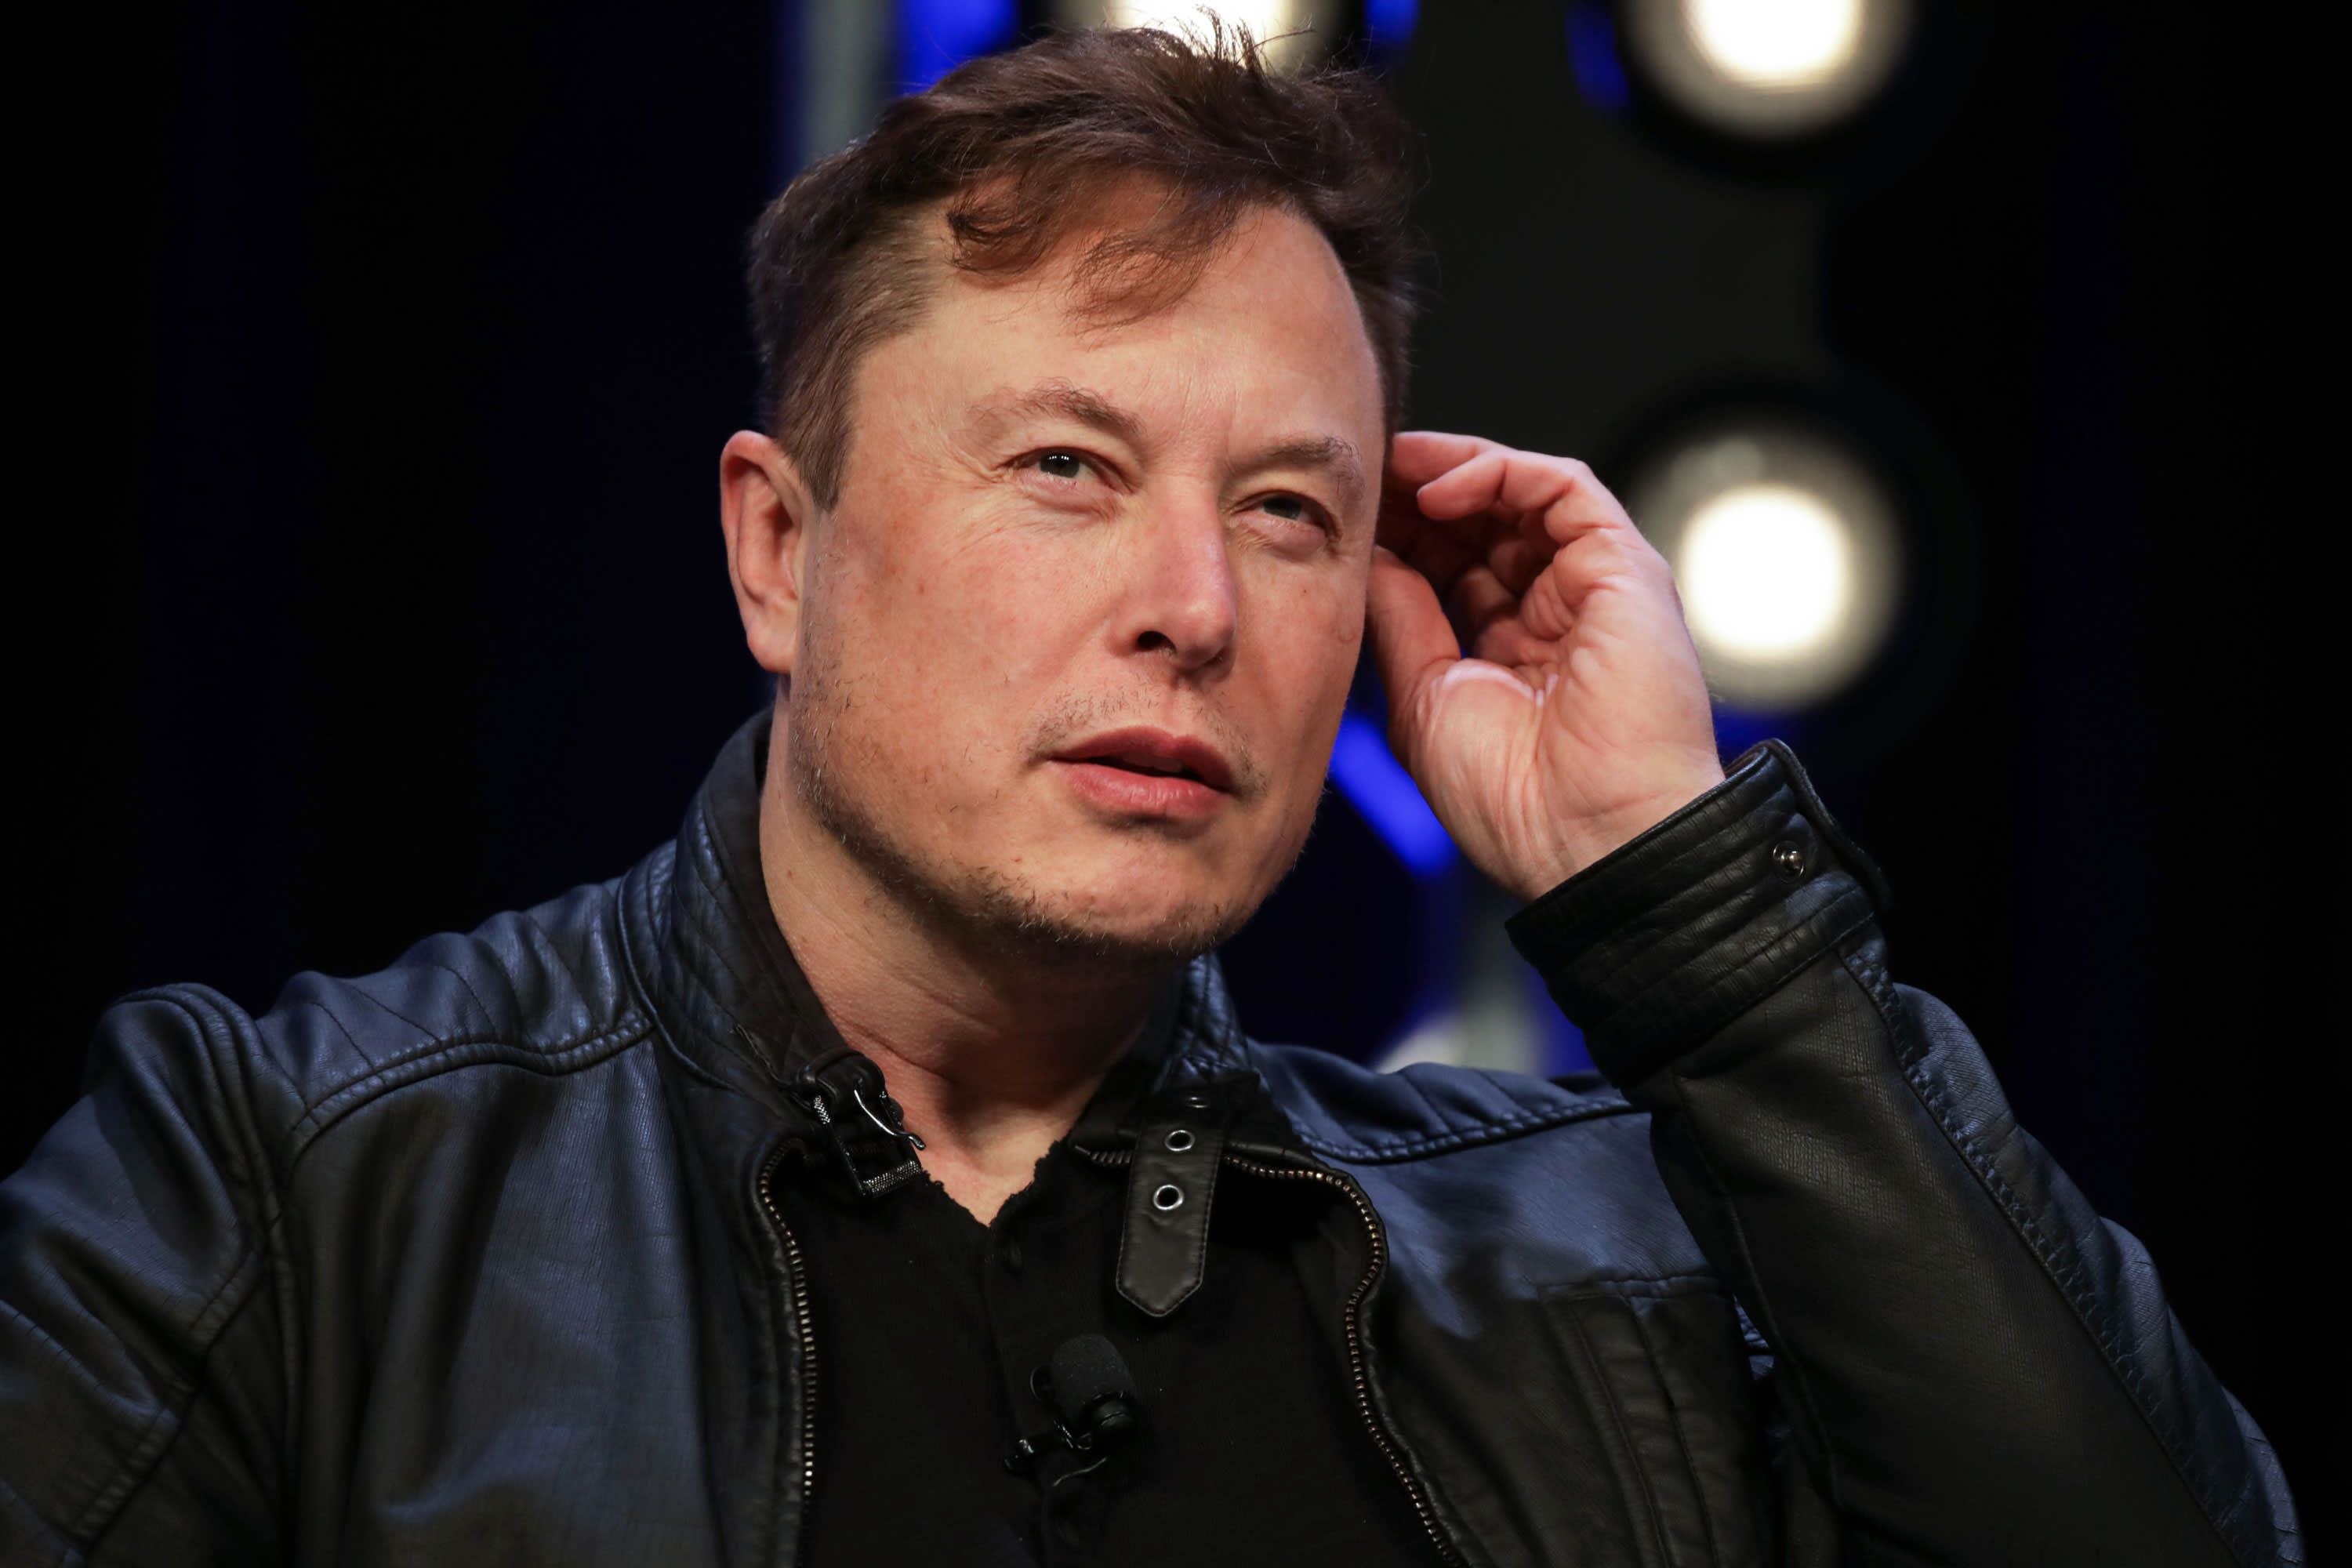 Tesla appeals to delete Elon Musk’s tweet about unions